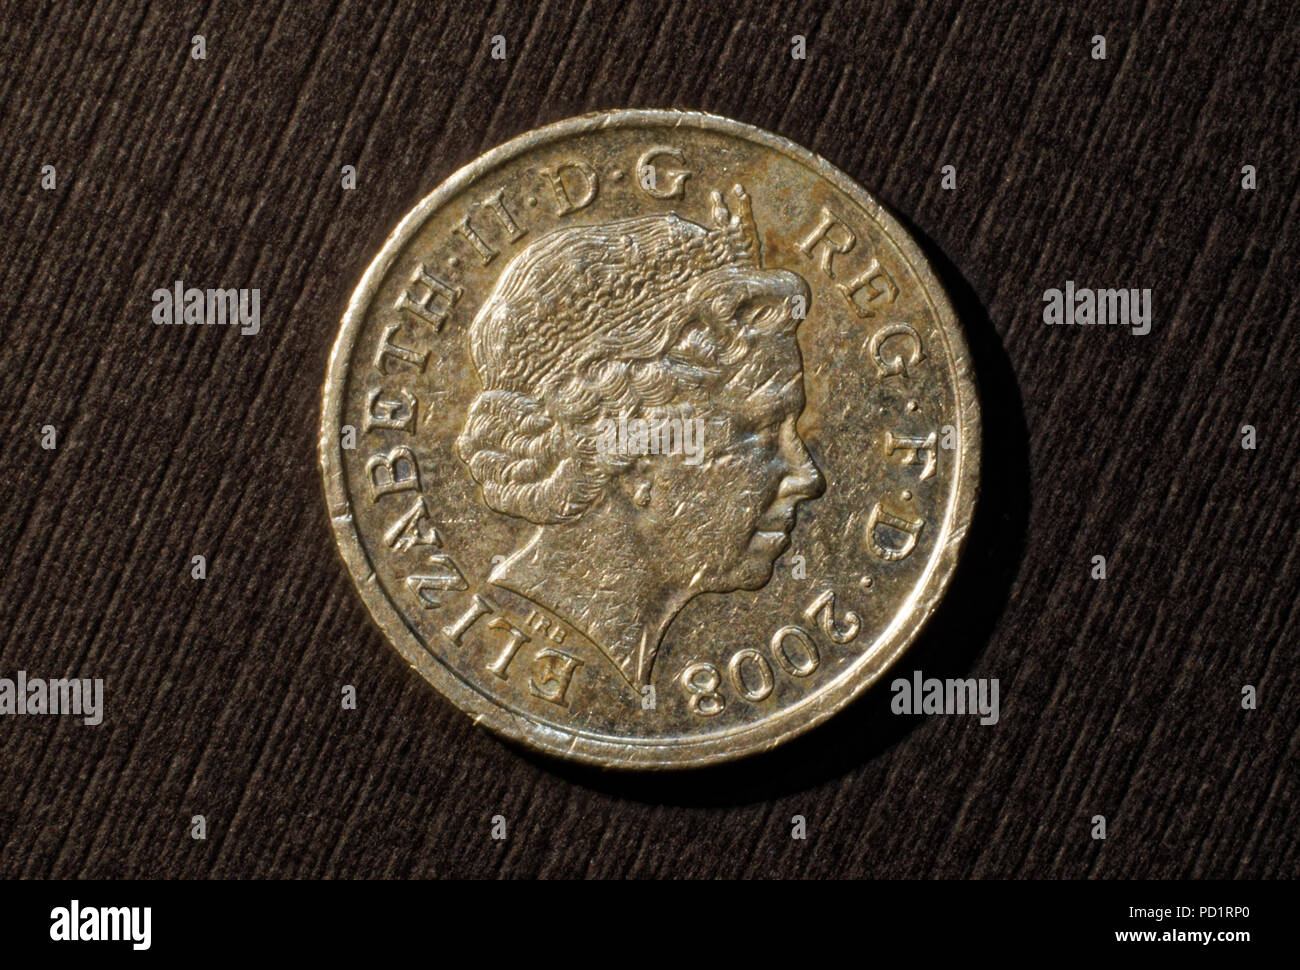 English coin,2008, one pound Stock Photo